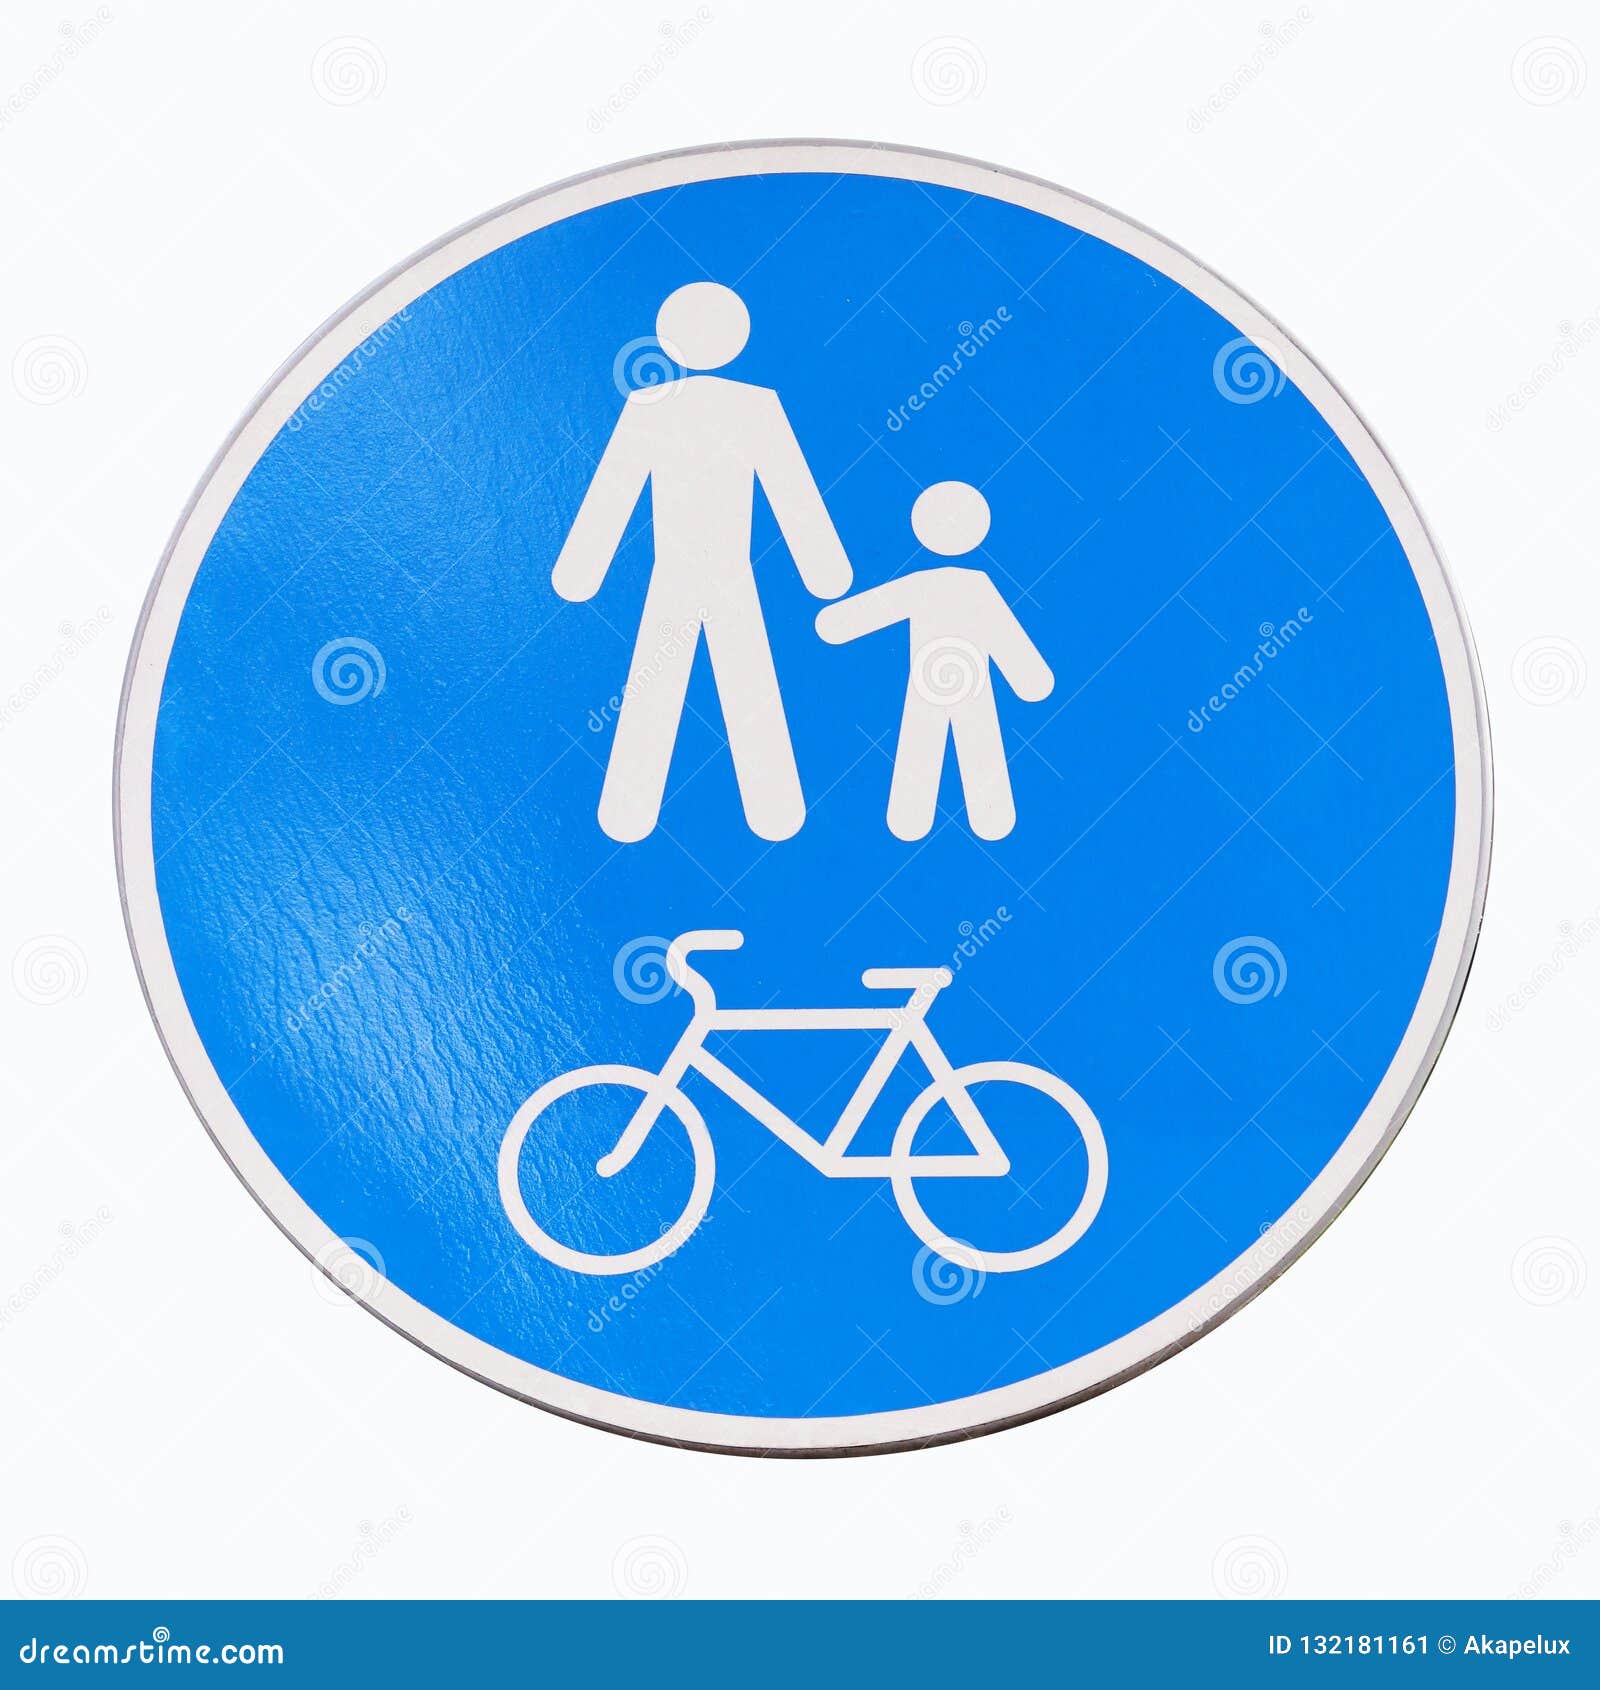 Đây là biển báo khu vực dành cho người đi bộ và xe đạp trên đường. Hãy nhấn vào hình ảnh để tìm hiểu thêm về cách giữ an toàn cho mình và các phương tiện giao thông khác trên đường phố.